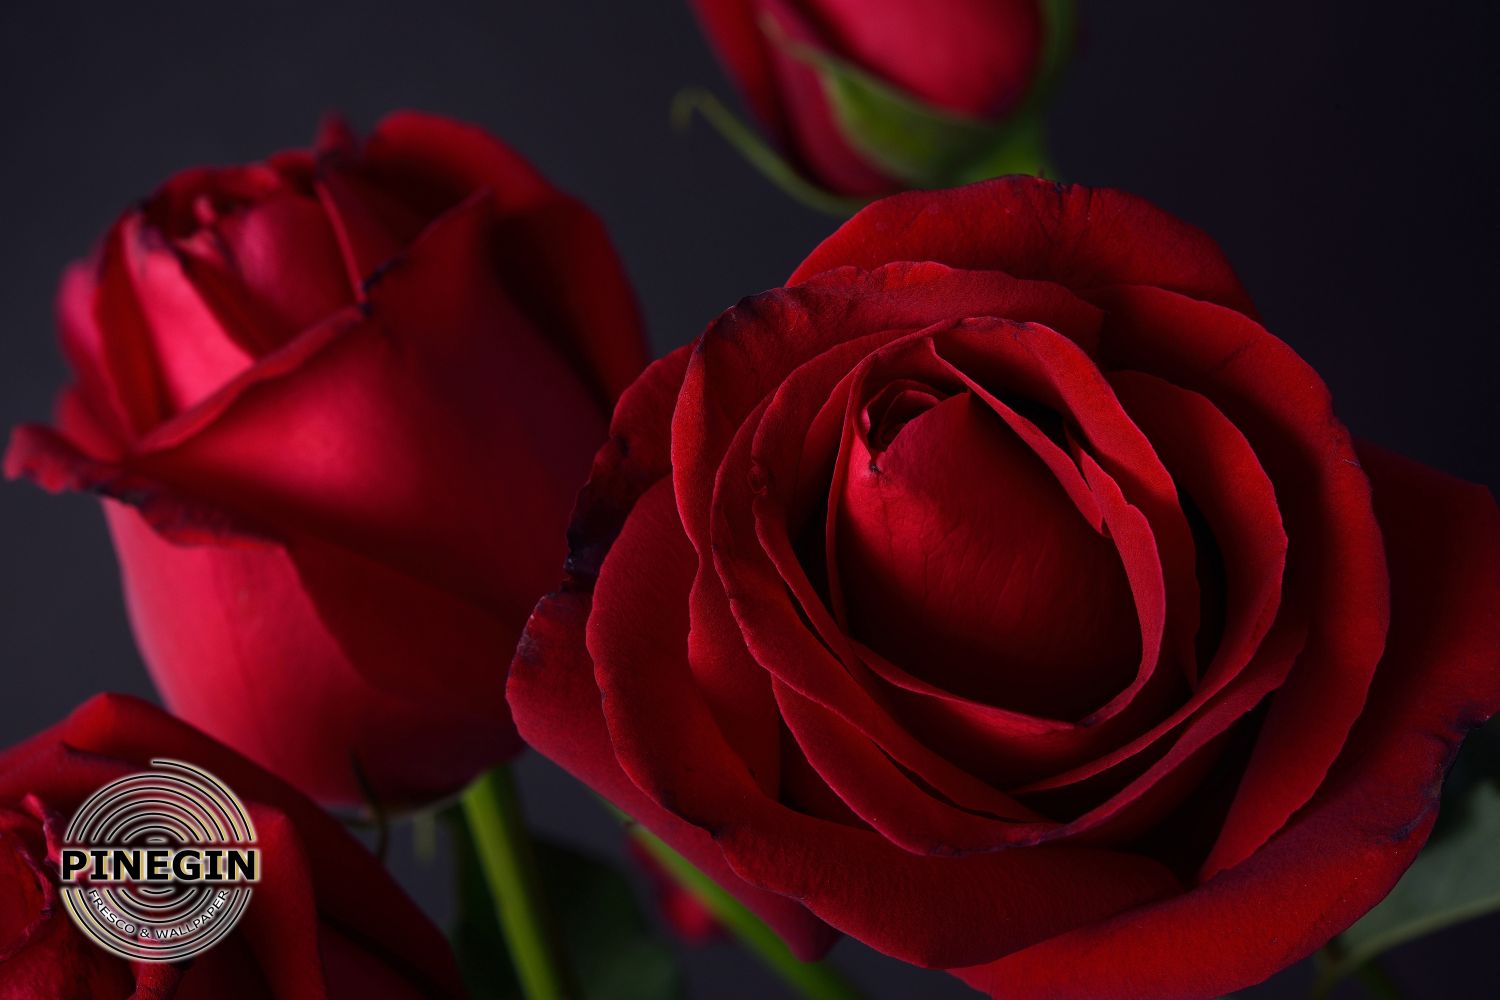 Фотообои «Три алые розы»